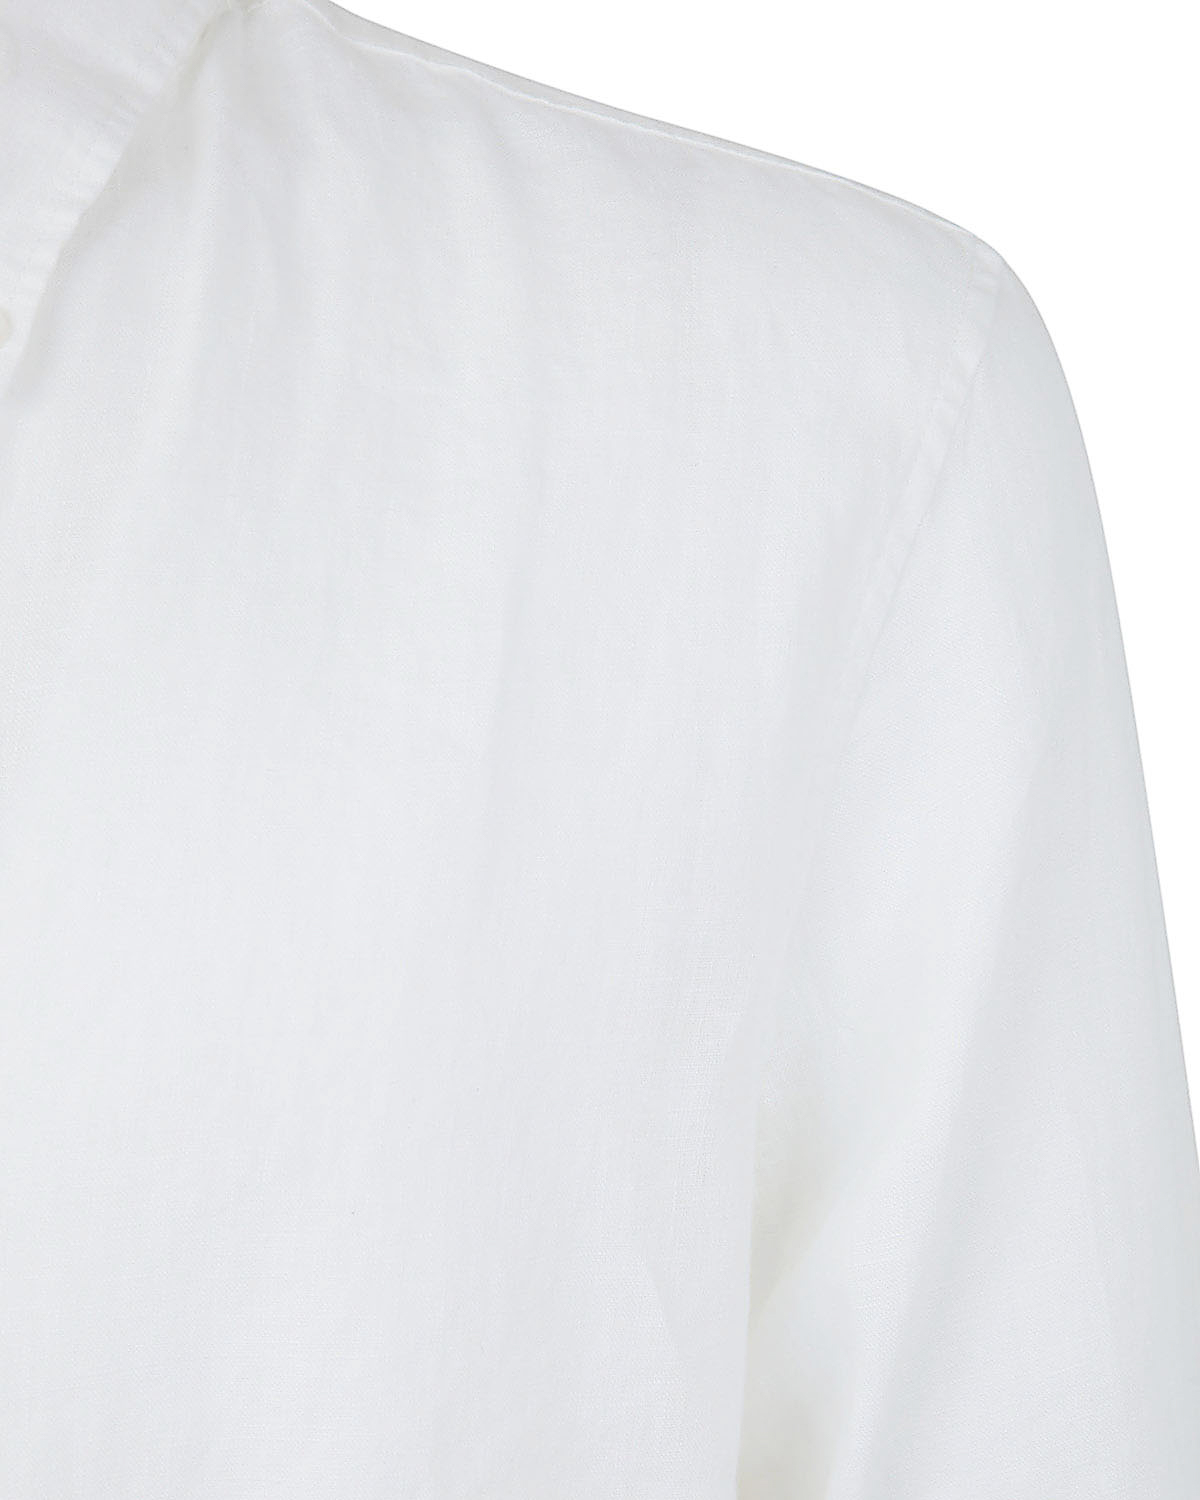 Shop Michael Kors Long Sleeved Linen Shirt In White